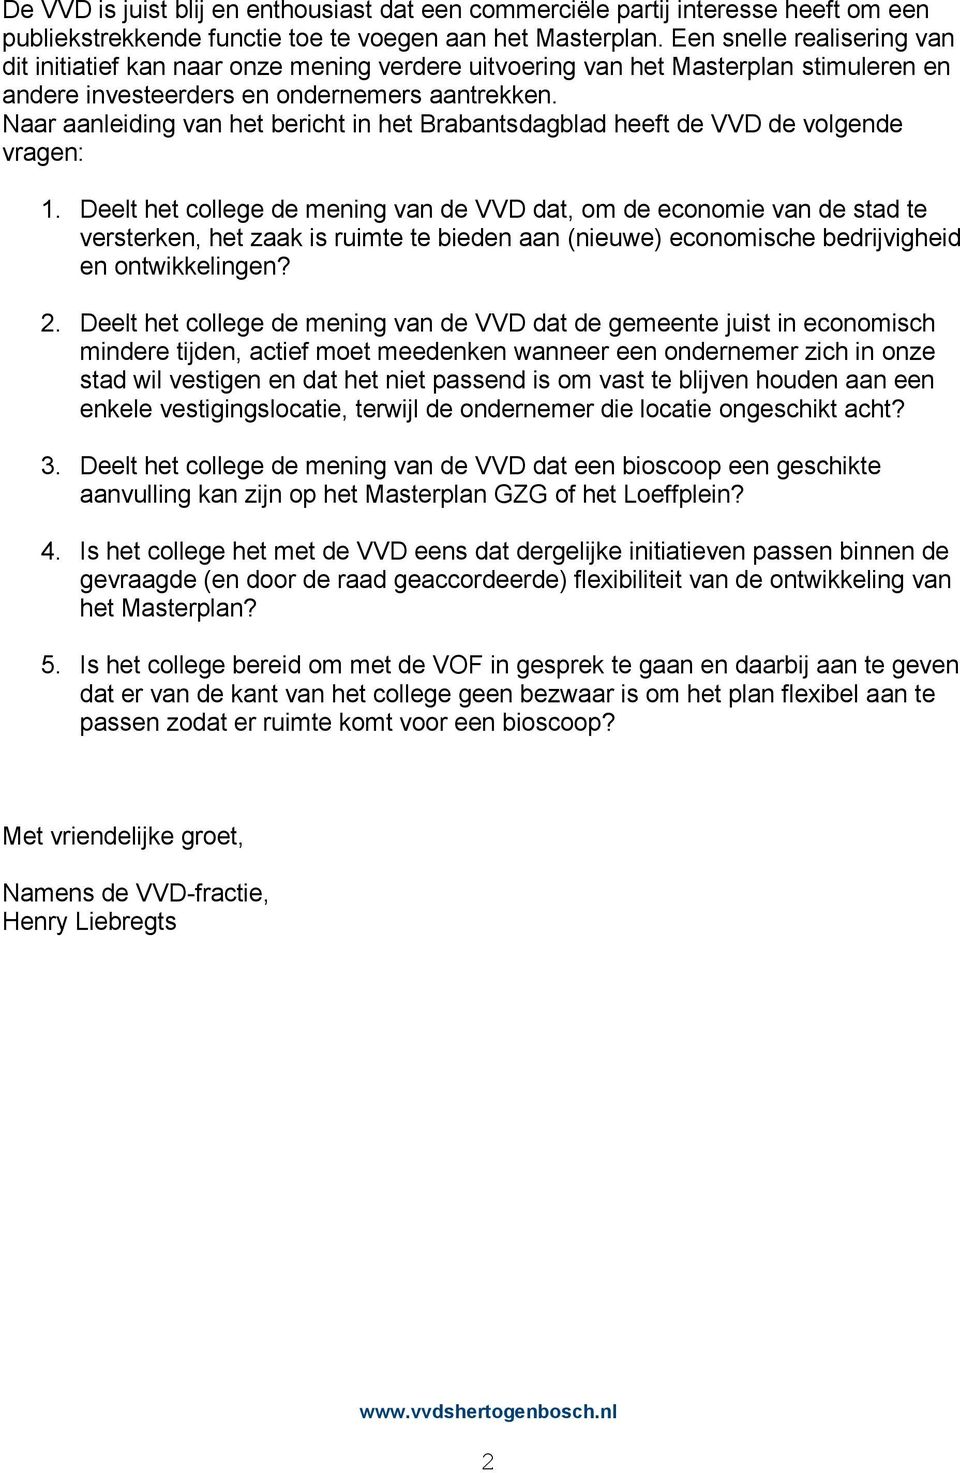 Naar aanleiding van het bericht in het Brabantsdagblad heeft de VVD de volgende vragen: 1.